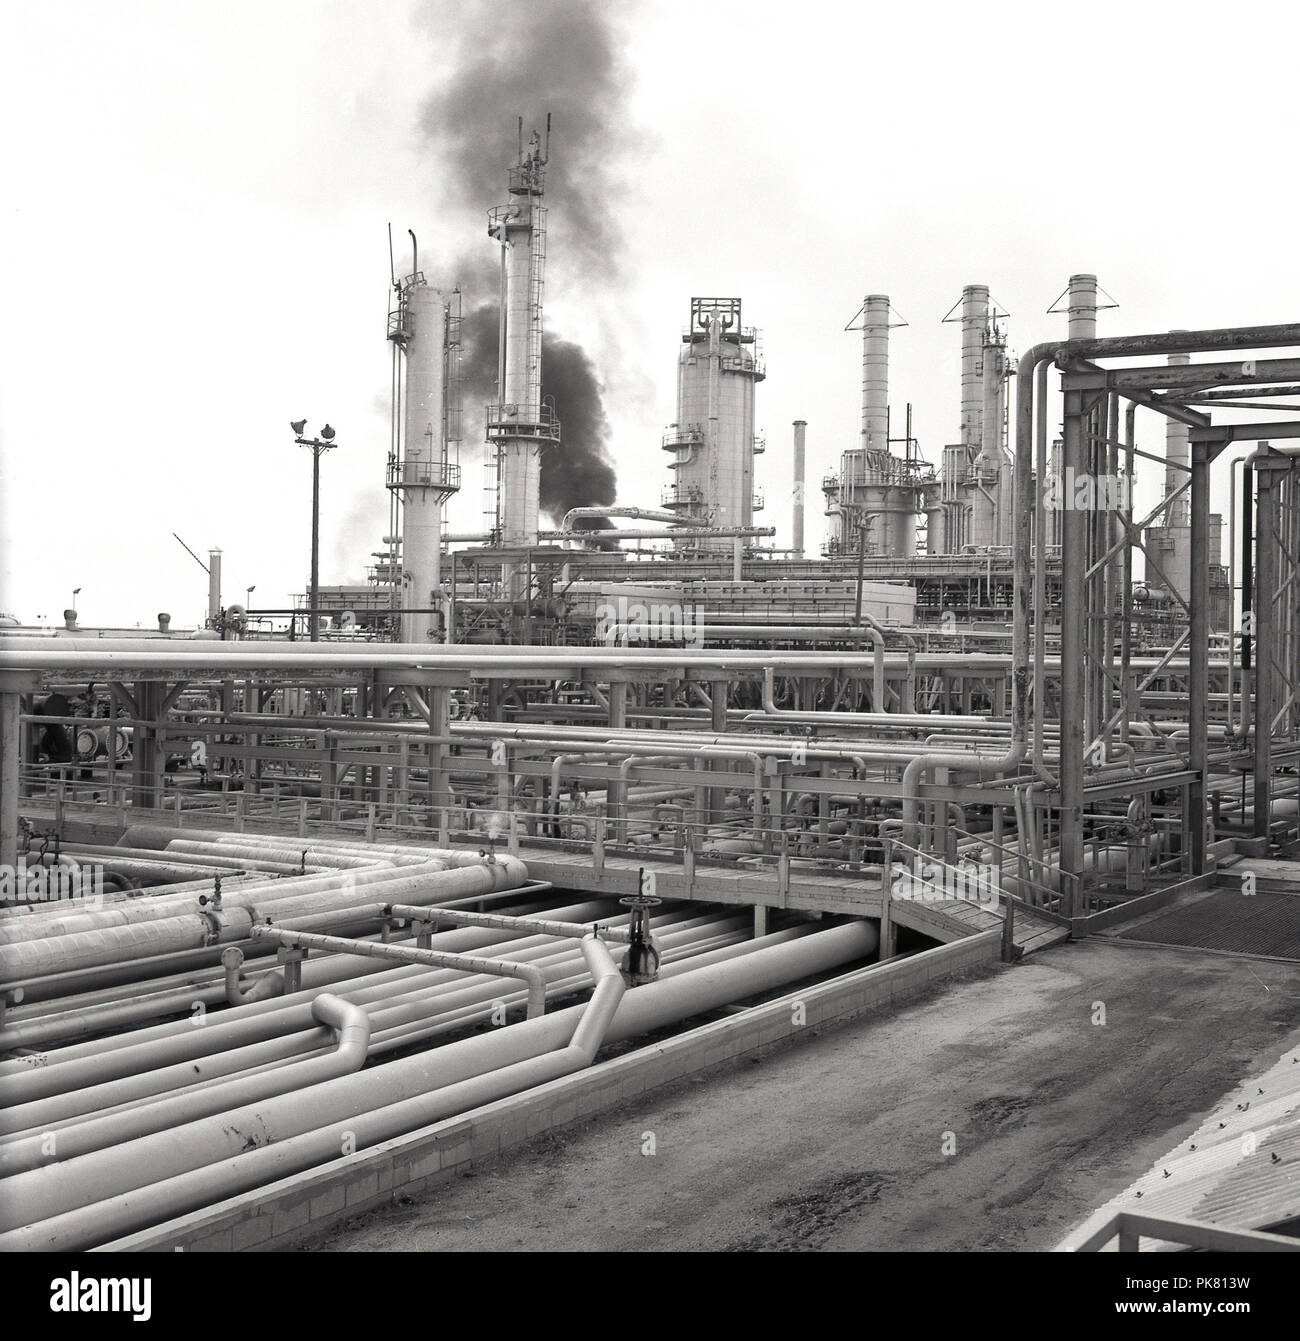 Anni sessanta, storico, vista esterna di una gigantesca raffineria di petrolio nel deserto in Arabia Saudita, che mostra una massa di oleodotti e fiamme o torri di masterizzazione. Foto Stock